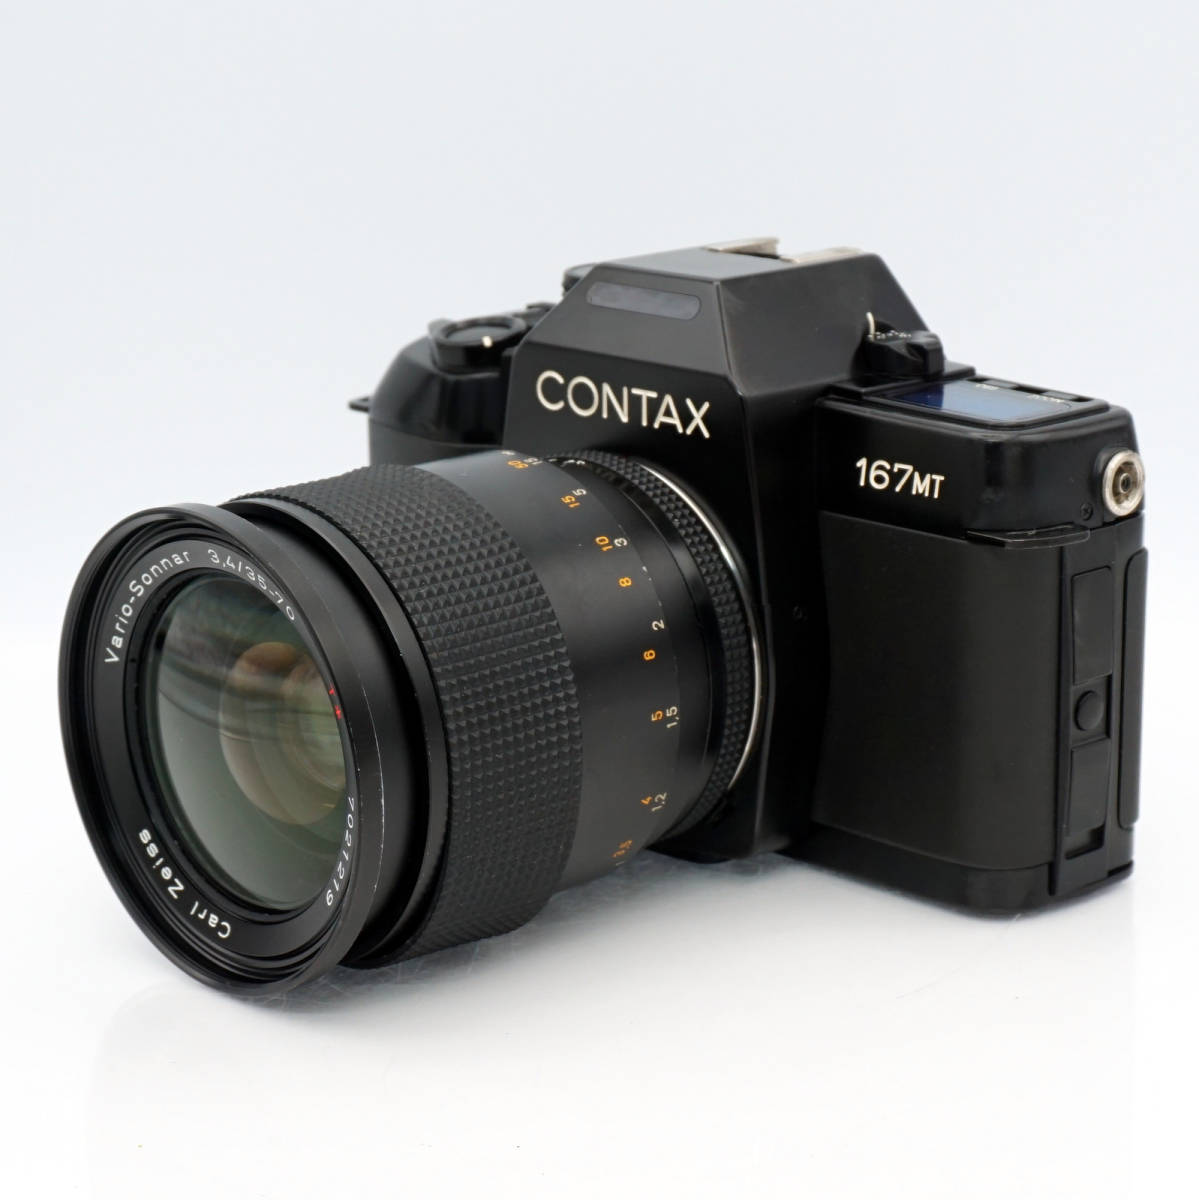 【動作確認済み】CONTAX 167MT レンズセット Carl Zeiss Vario-Sonnar 35-70mm F3.4 Macro◆コンタックス 一眼レフカメラ_画像3